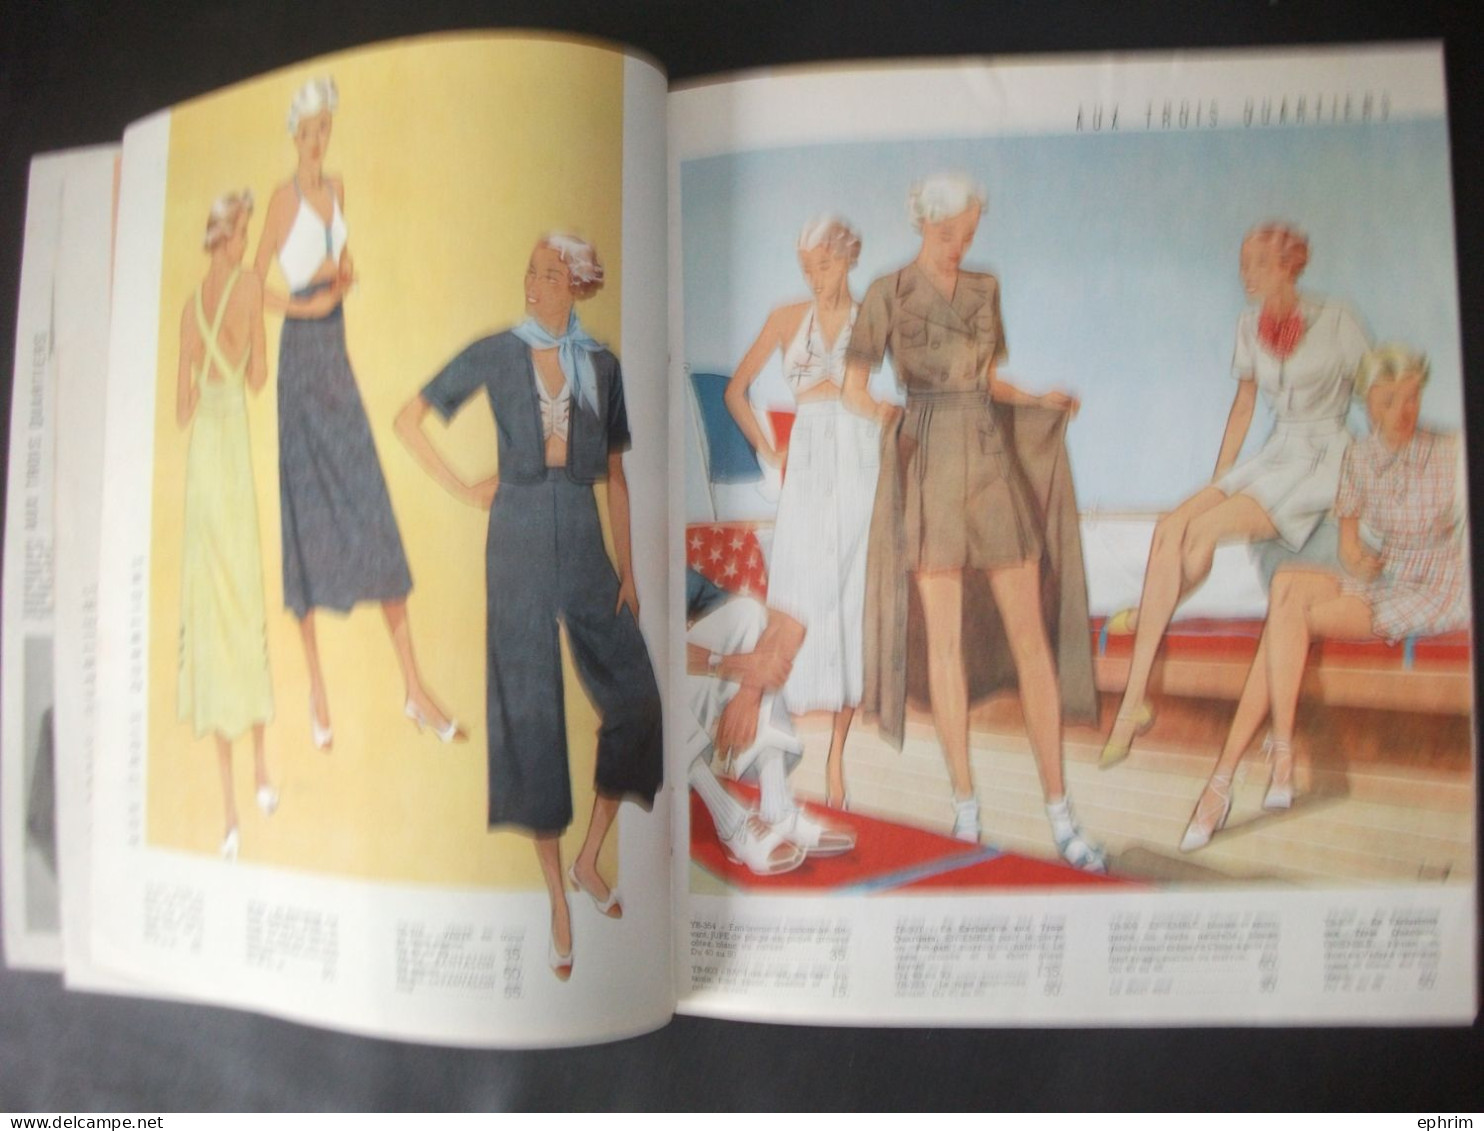 Aux Trois Quartiers Eté 1936 Catalogue Ancien Magasin De Mode Vêtements Chapeau Lingerie Robe Sac à Main Costume De Bain - Mode